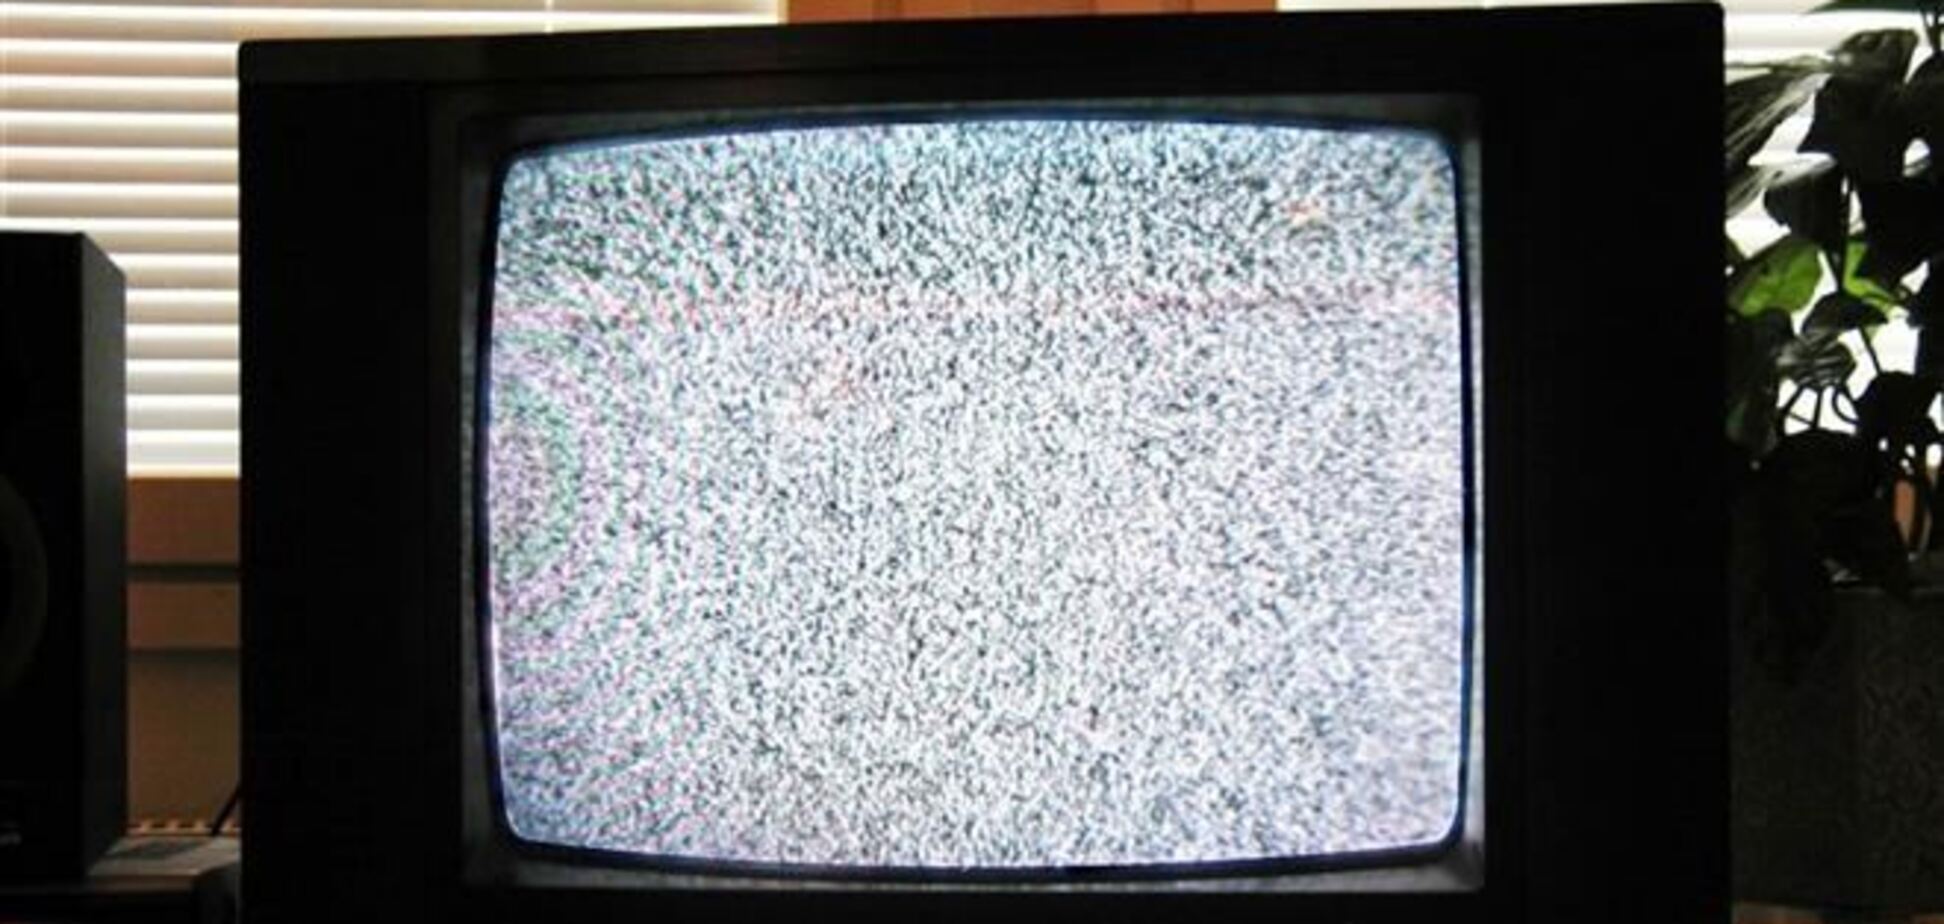 Нардепи пропонують тимчасово відключити трансляції російських ТБ каналів